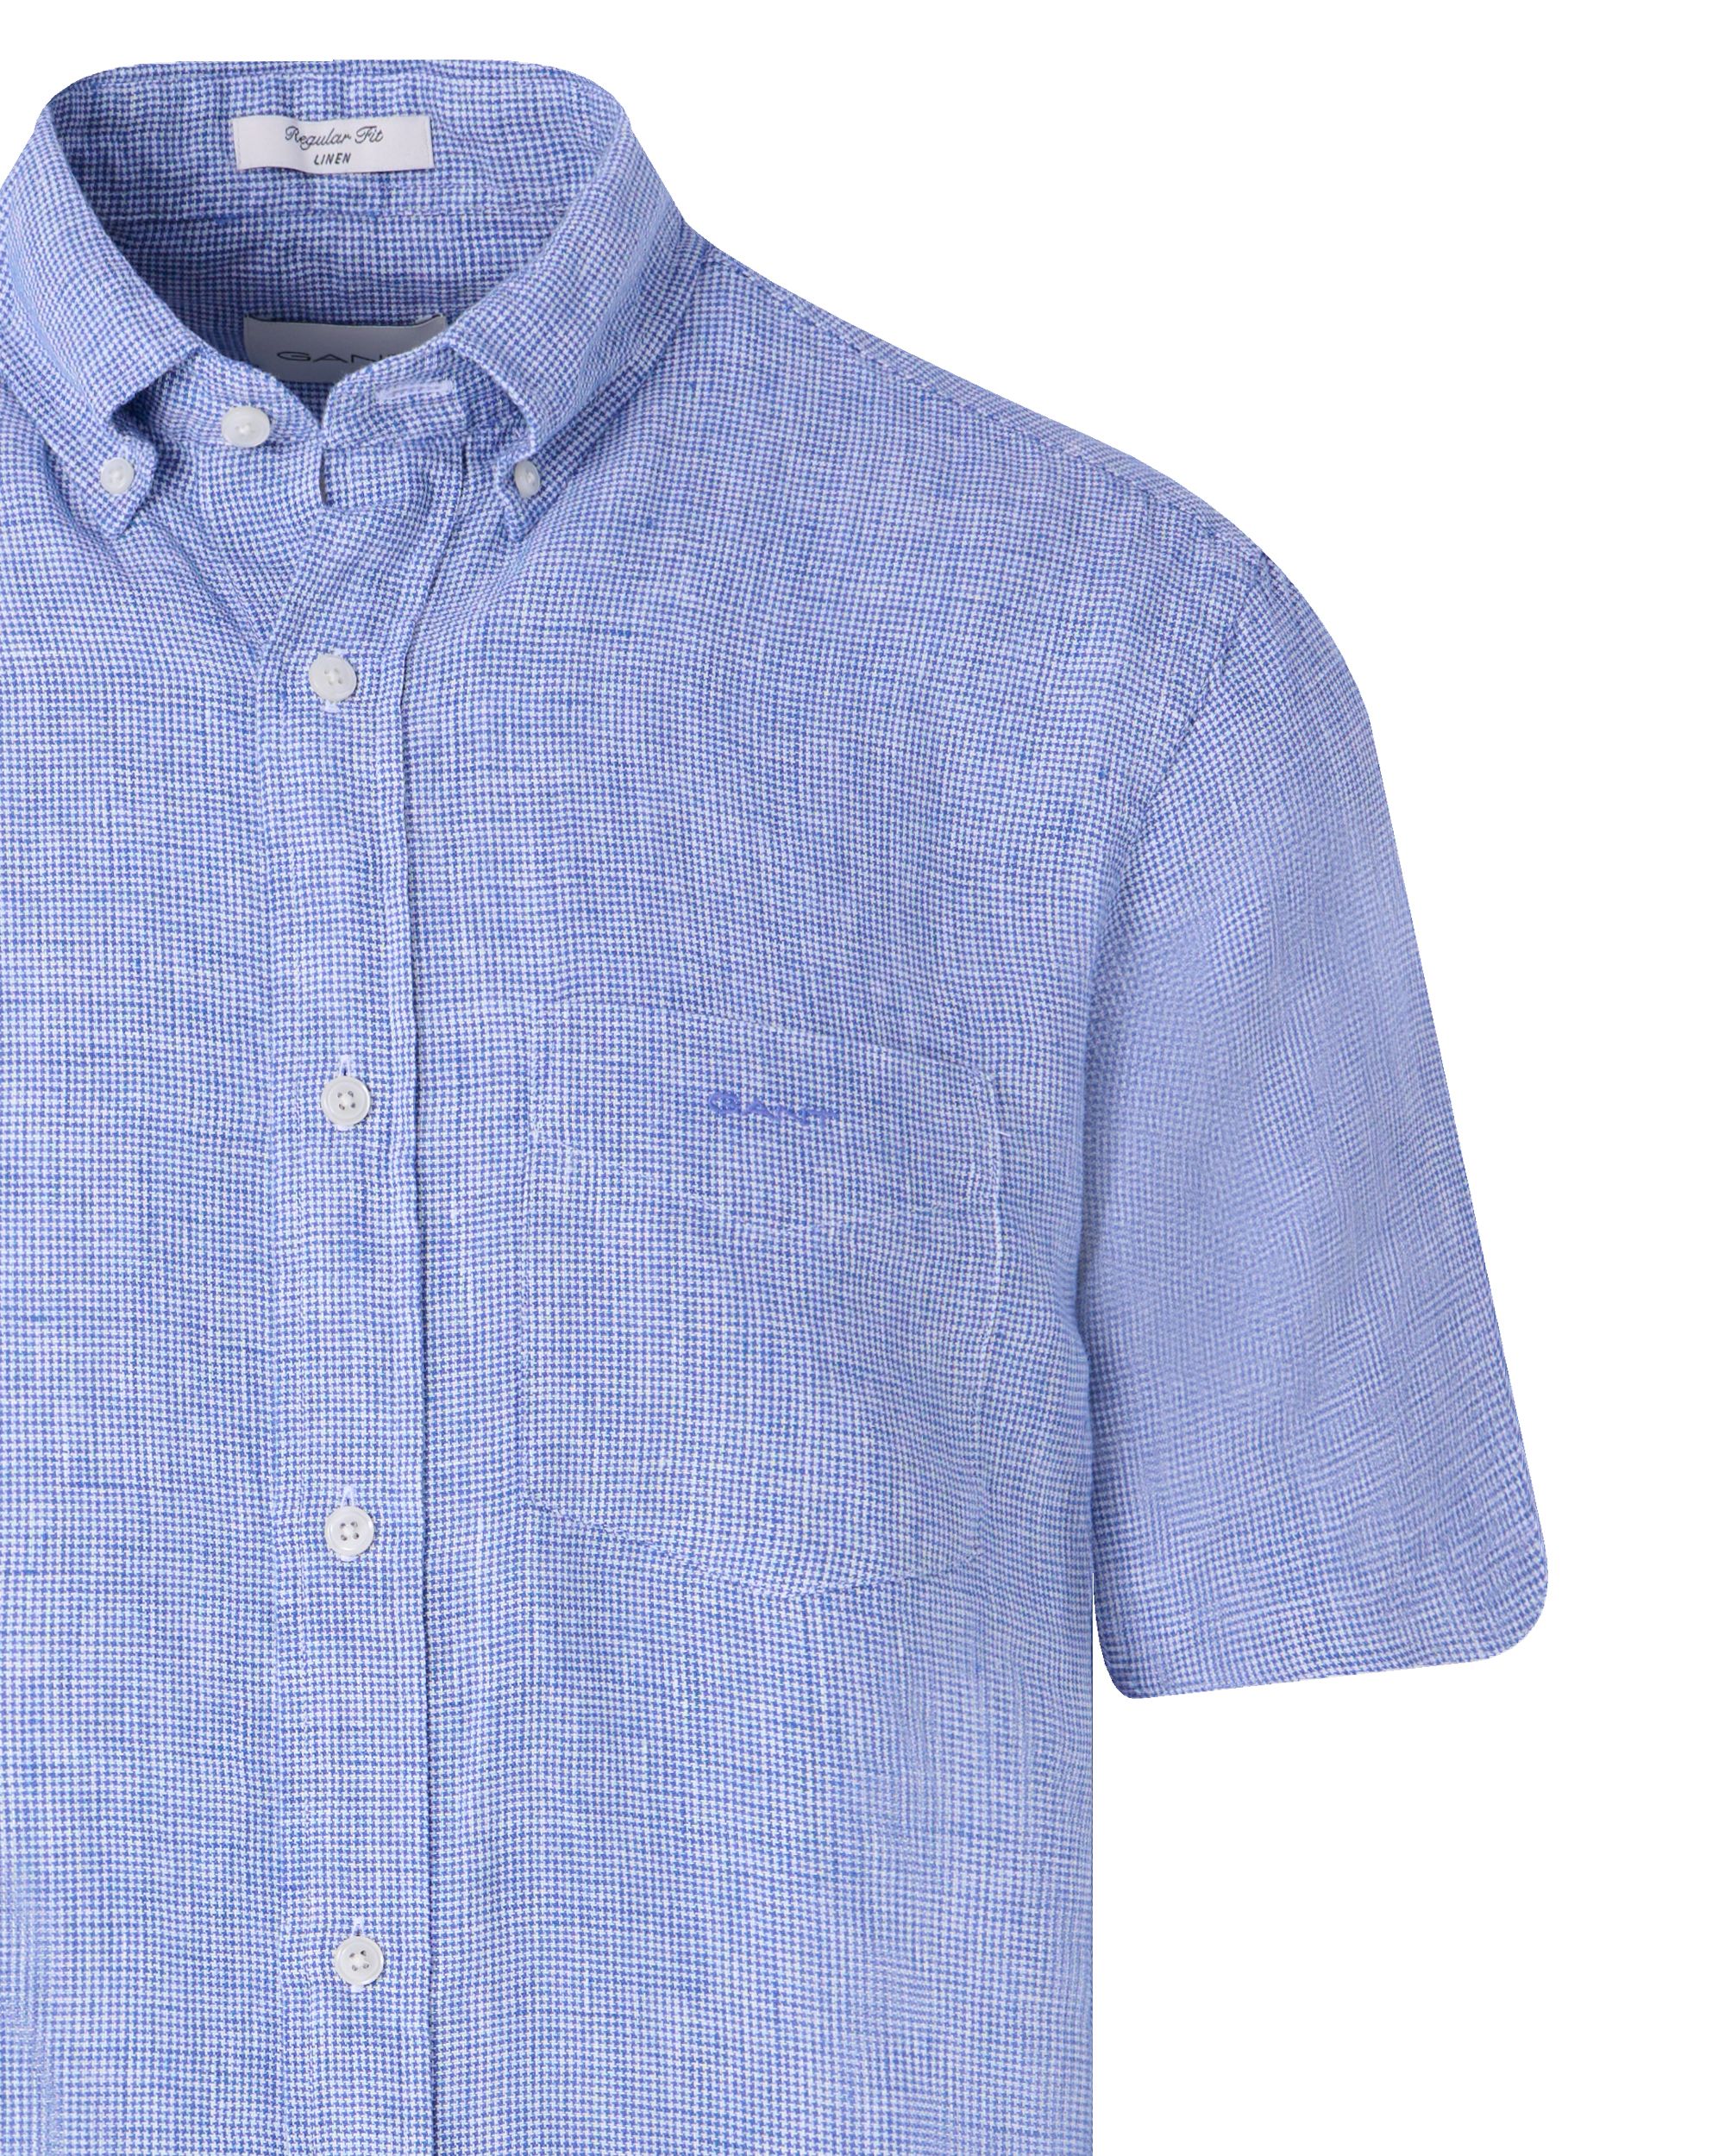 GANT Casual Overhemd KM Donker blauw 091651-001-L